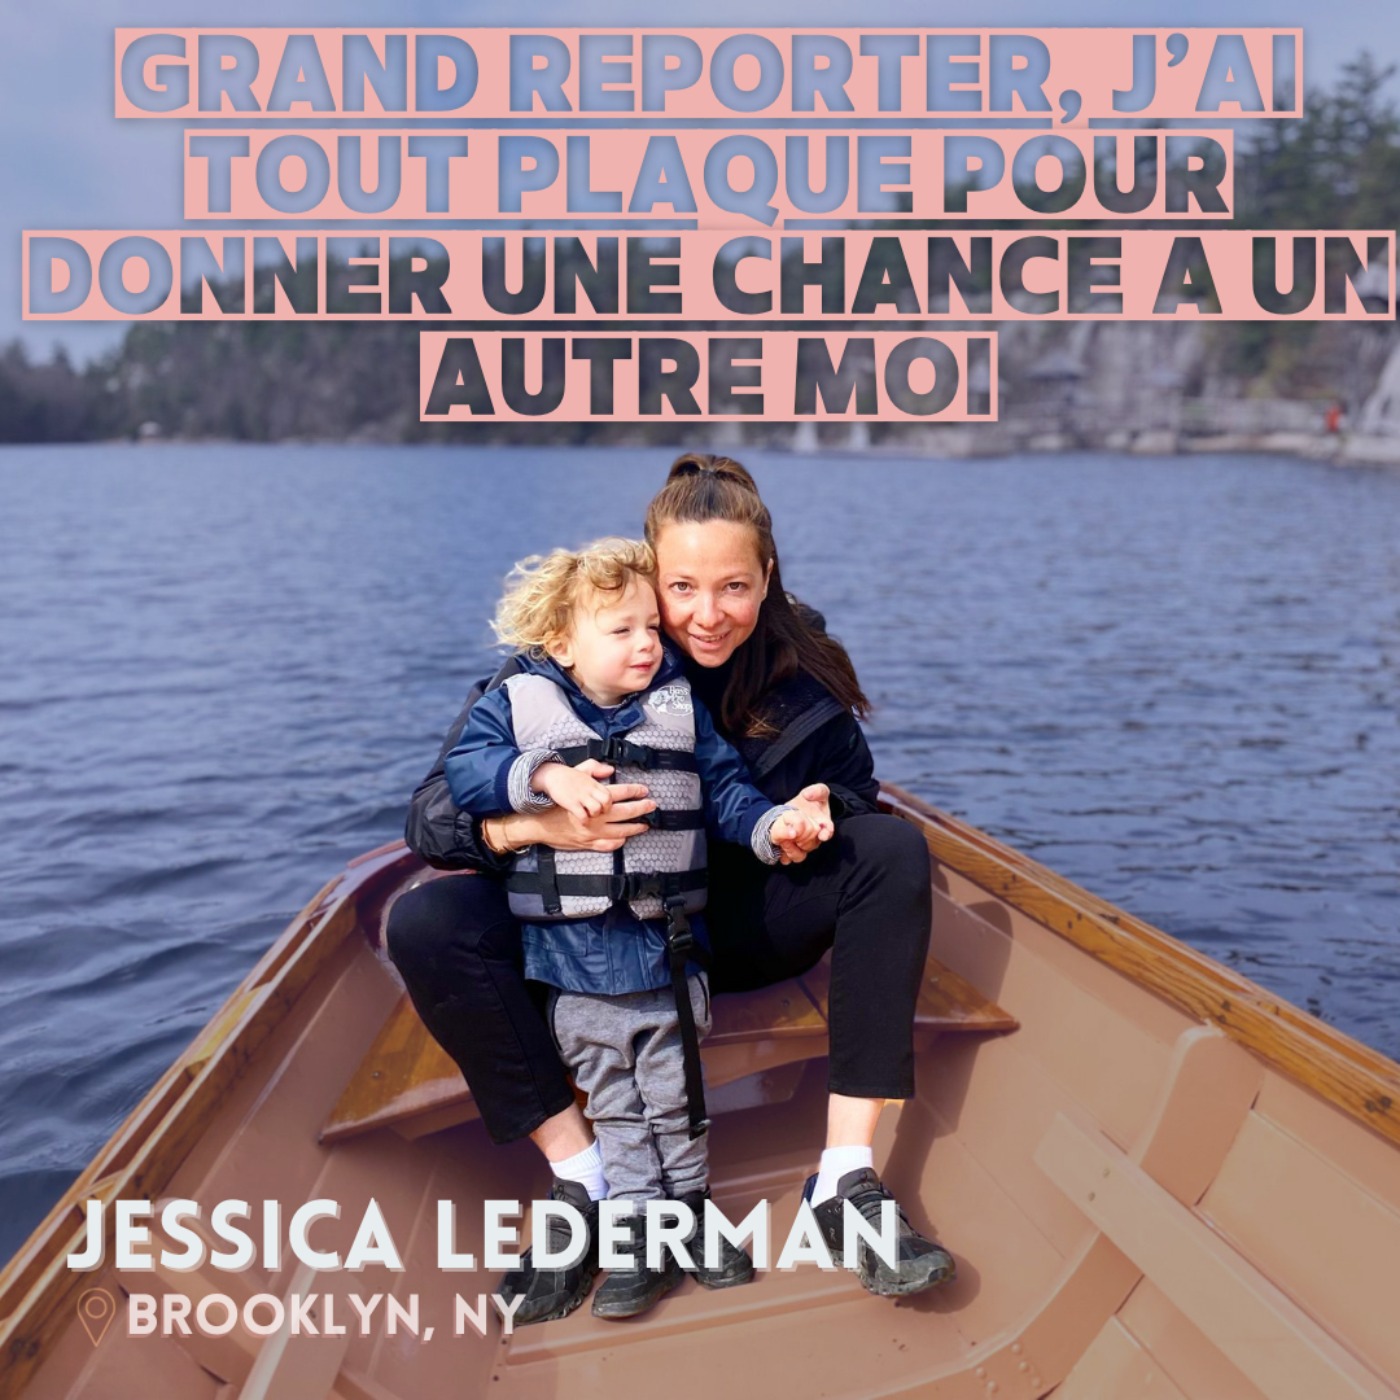 Jessica Lederman : ≪Grand reporter, j’ai tout plaqué pour donner une chance à une autre Moi≫